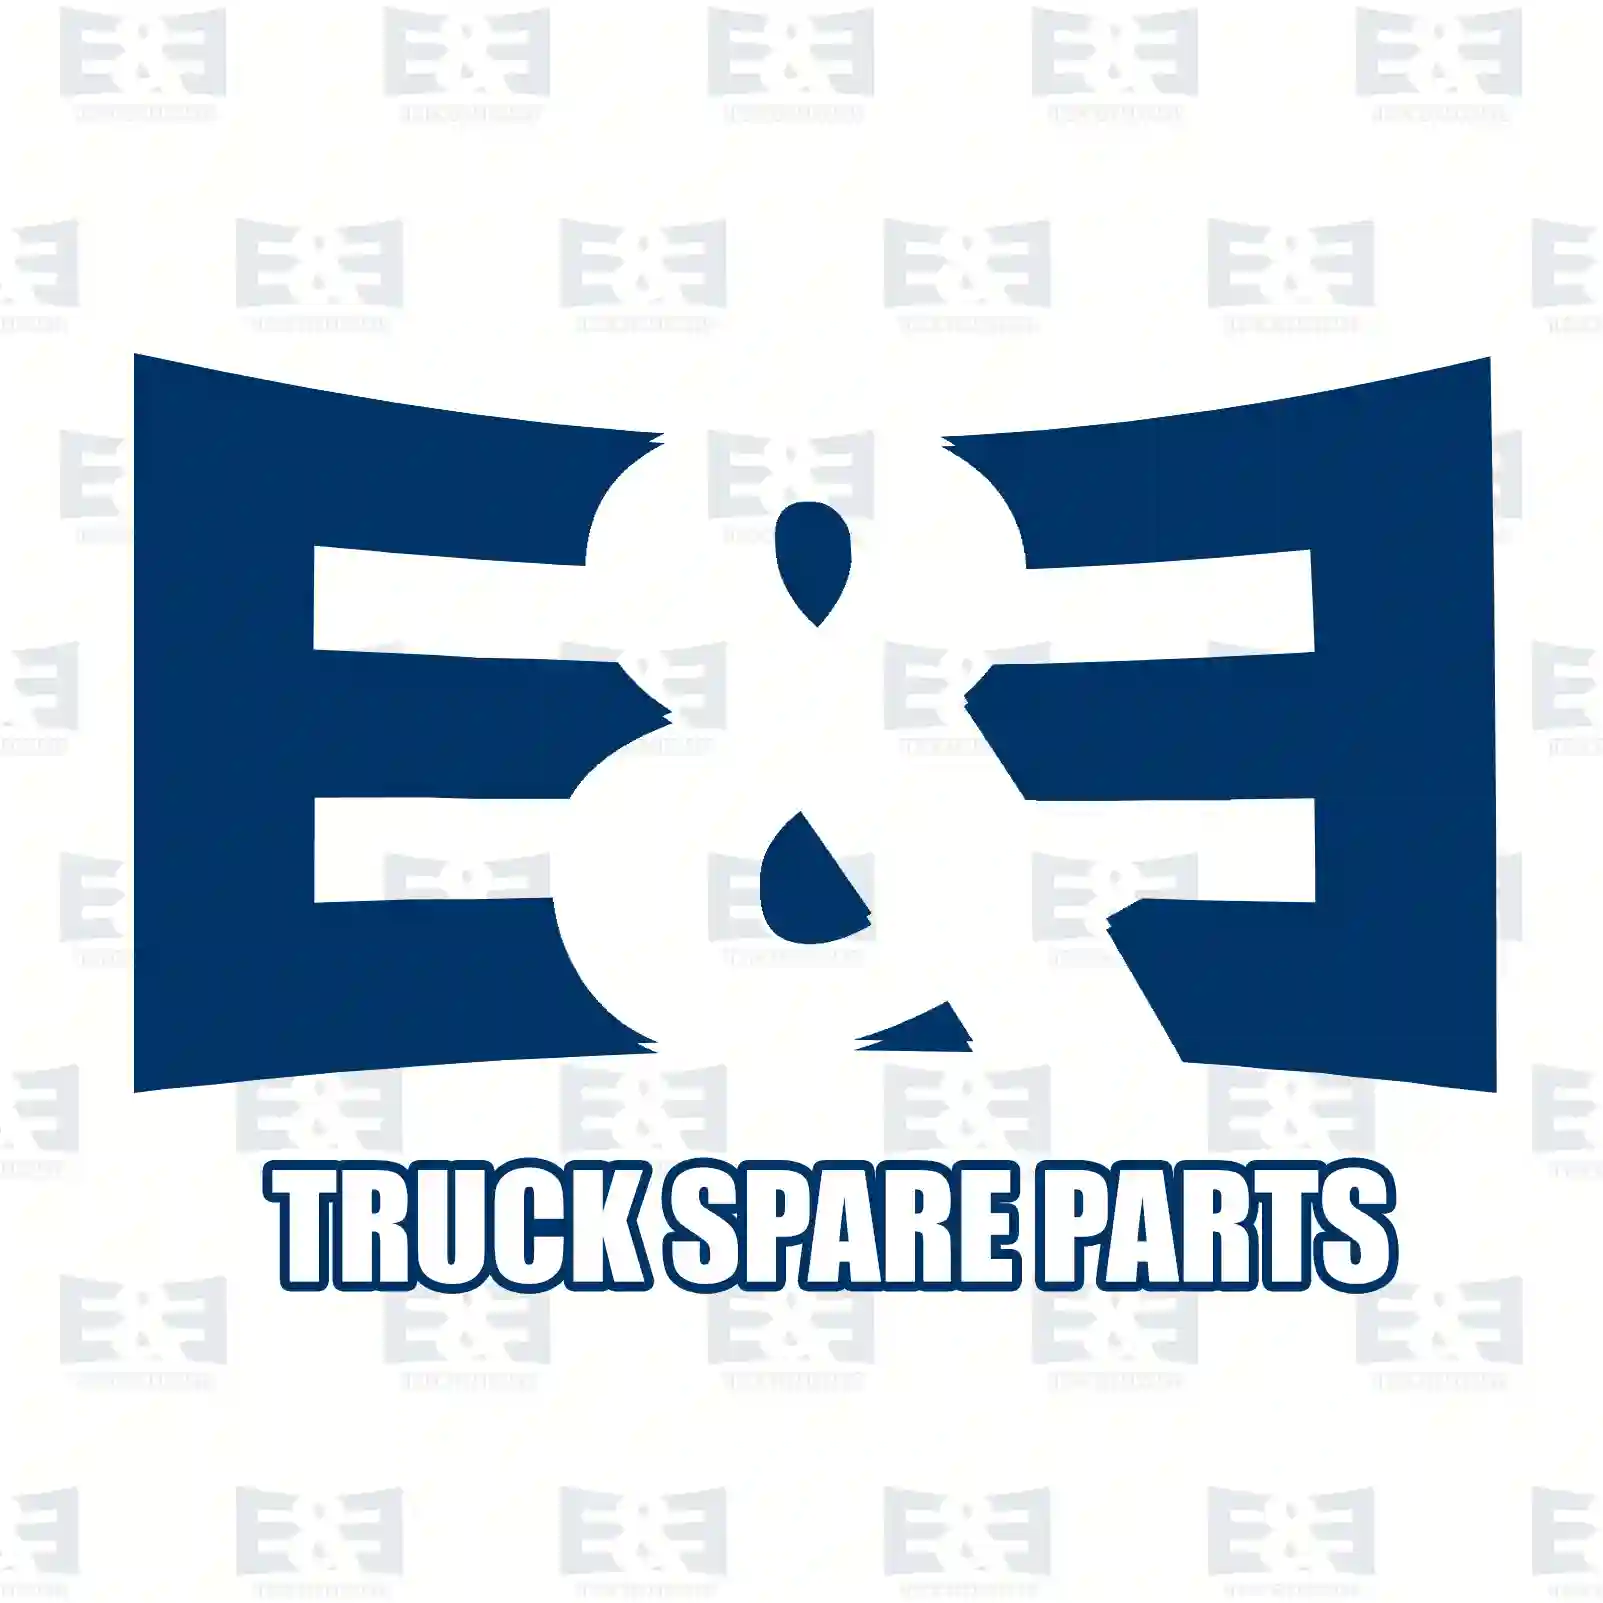 Track rod, 2E2270325, 3463304003, 3463304603, 3463304803 ||  2E2270325 E&E Truck Spare Parts | Truck Spare Parts, Auotomotive Spare Parts Track rod, 2E2270325, 3463304003, 3463304603, 3463304803 ||  2E2270325 E&E Truck Spare Parts | Truck Spare Parts, Auotomotive Spare Parts